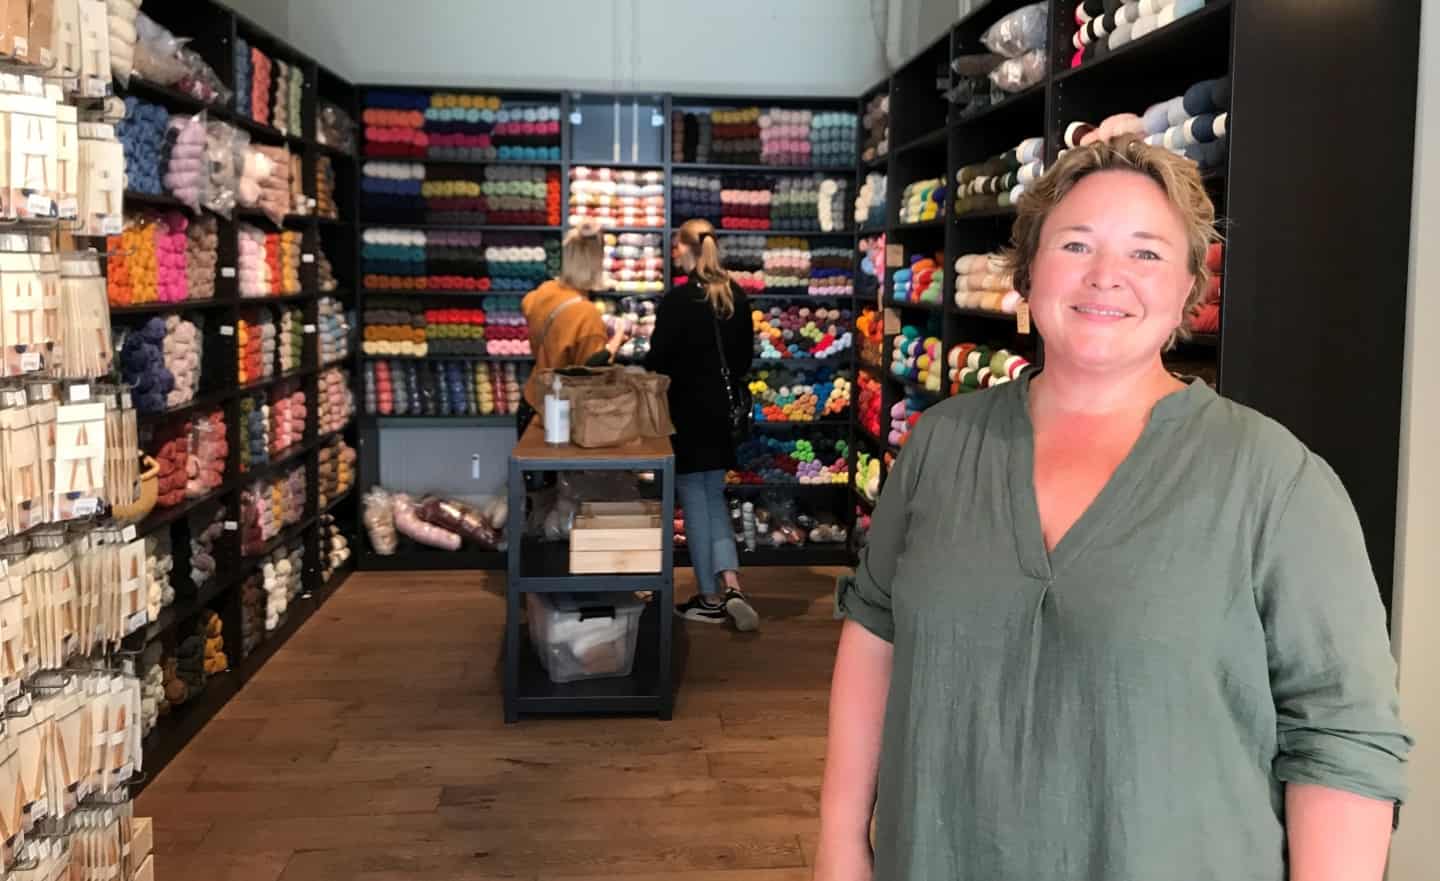 Hilde sagde jobbet op for at åbne butik - Jeg har altid drømt det | kobenhavnliv.dk